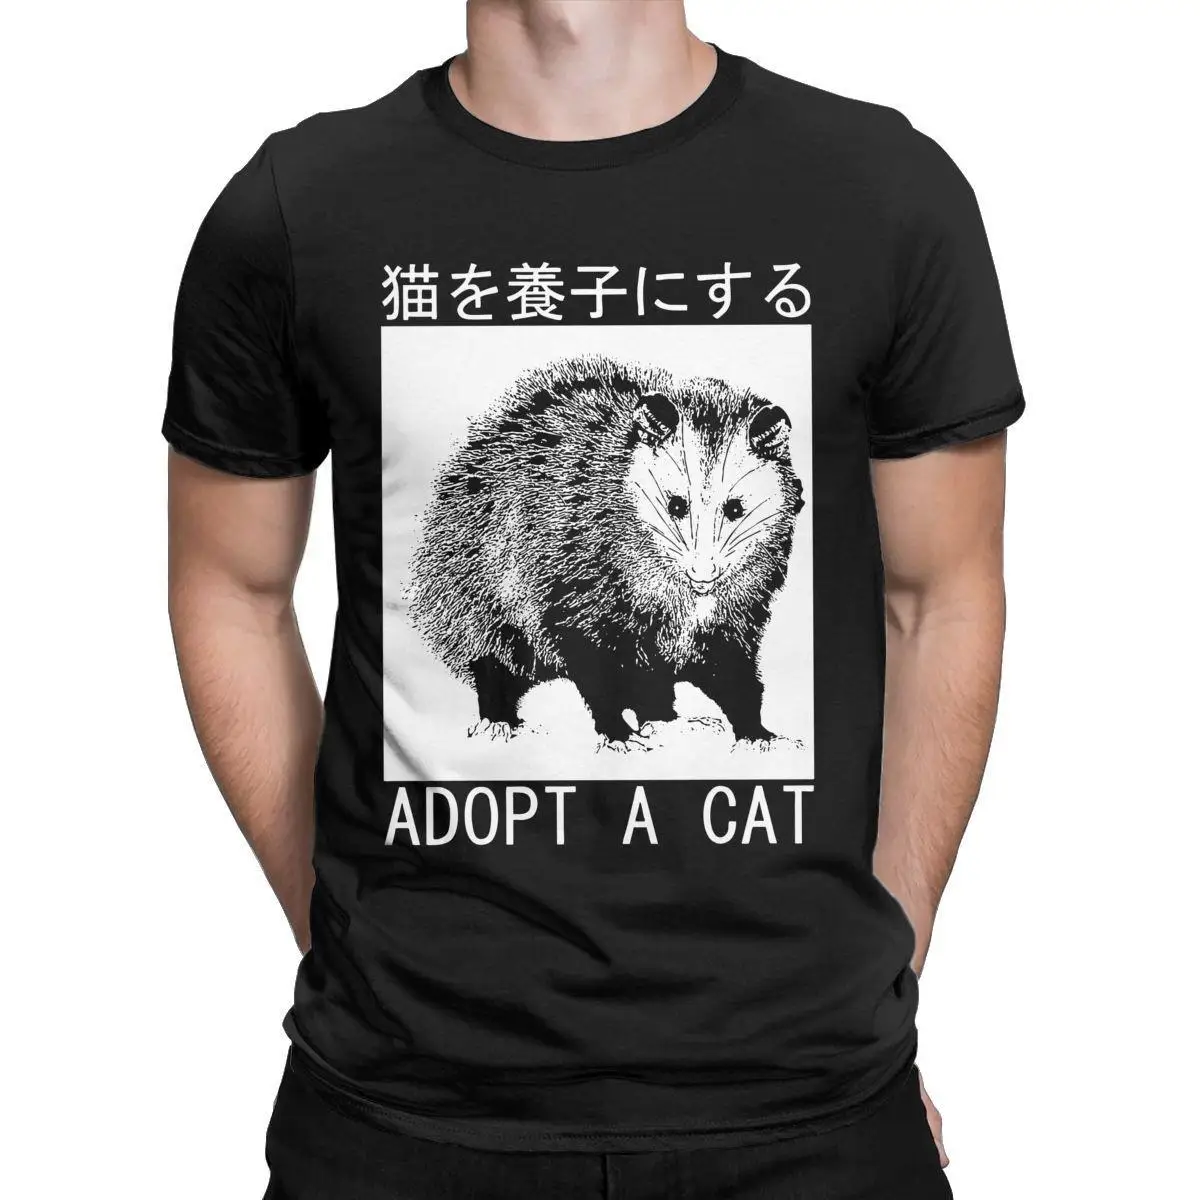 Adopt A Cat Opossum Japanese T-Shirts Men Novelty 100% Cotton Tee Shirt Crewneck Short Sleeve T Shirt Classic Tops